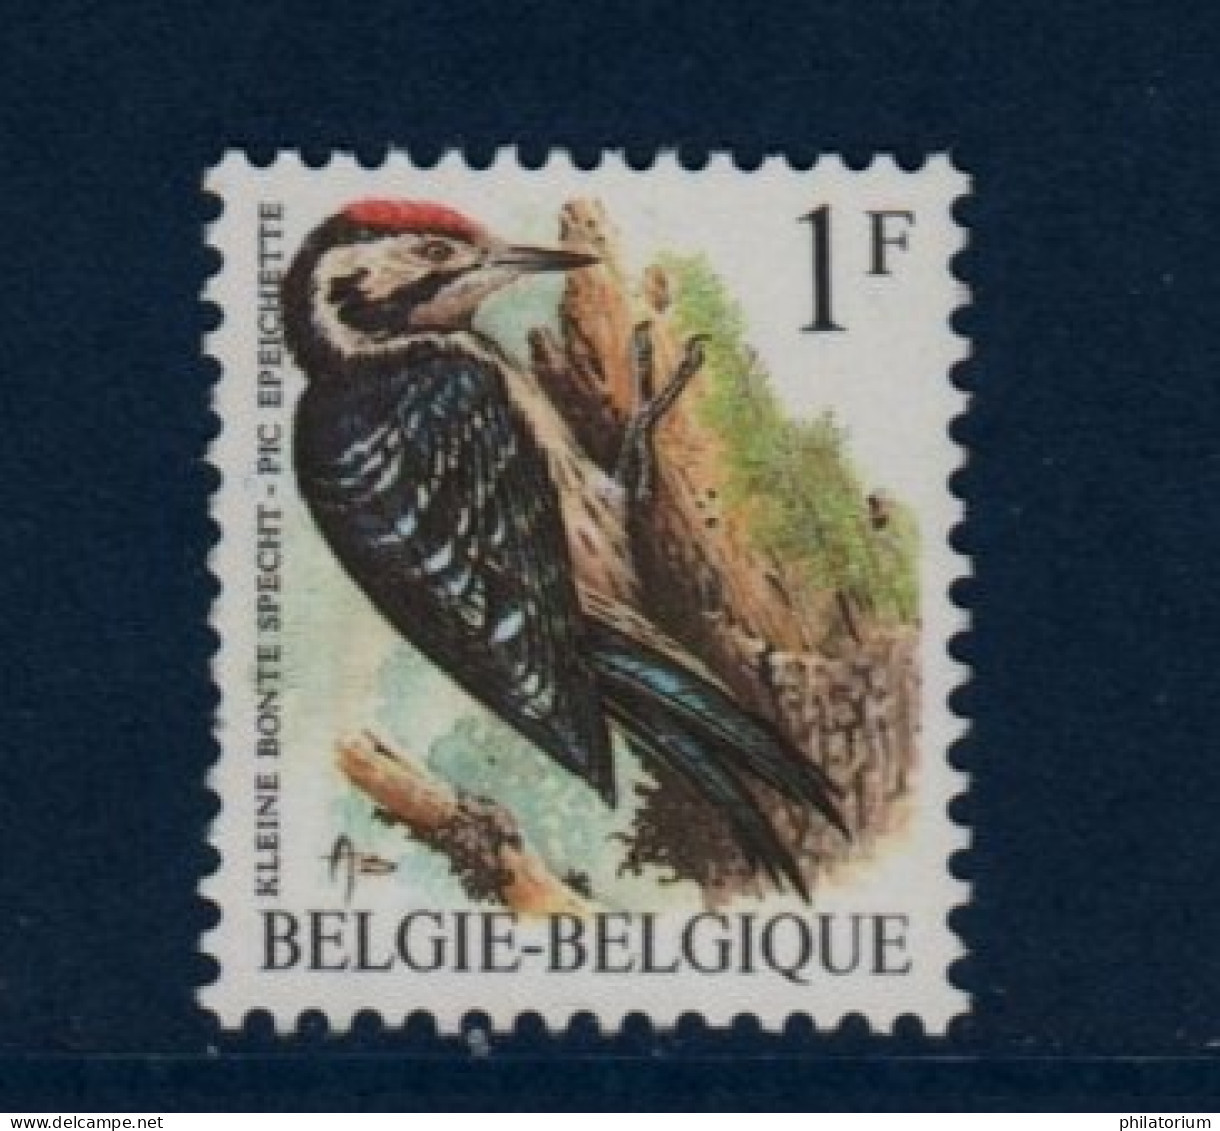 Belgique België, **, Yv 2349, Mi 2401x, SG 2845, Pic épeichette, - 1985-.. Oiseaux (Buzin)